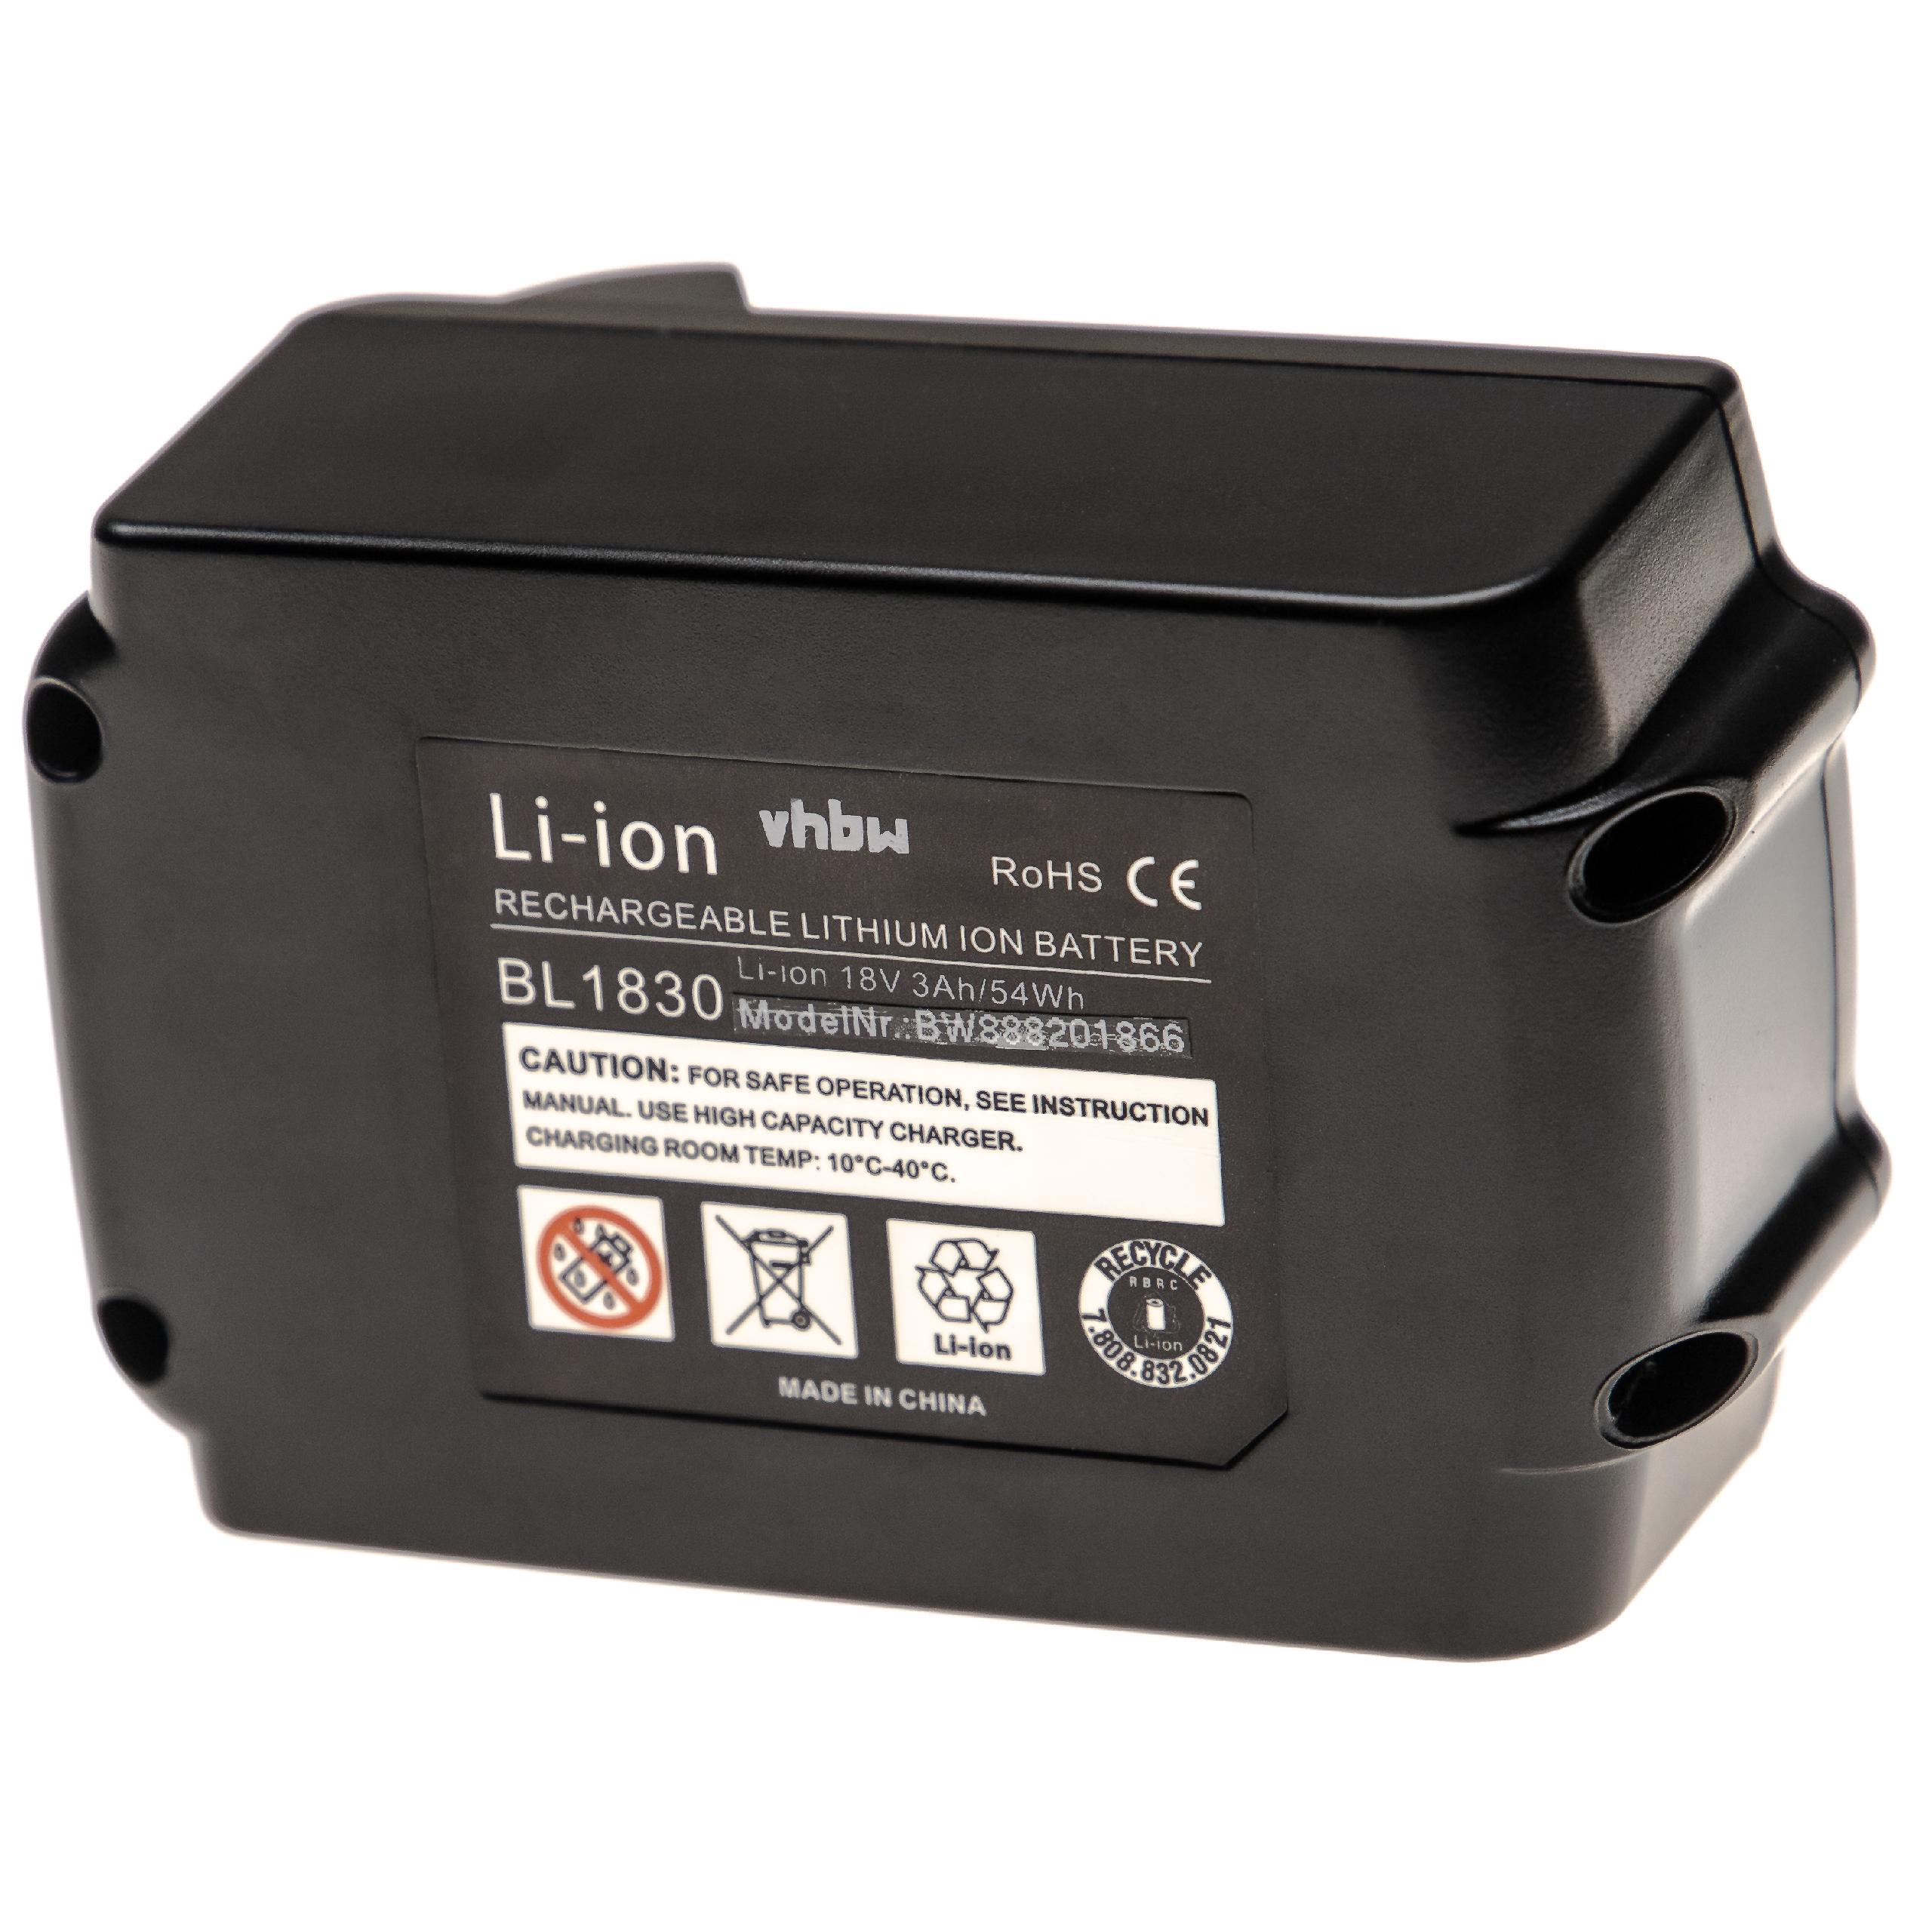 Batterie remplace Makita 194309-1, 194230-4, 194205-3, 194204-5 pour outil électrique - 3000 mAh, 18 V, Li-ion